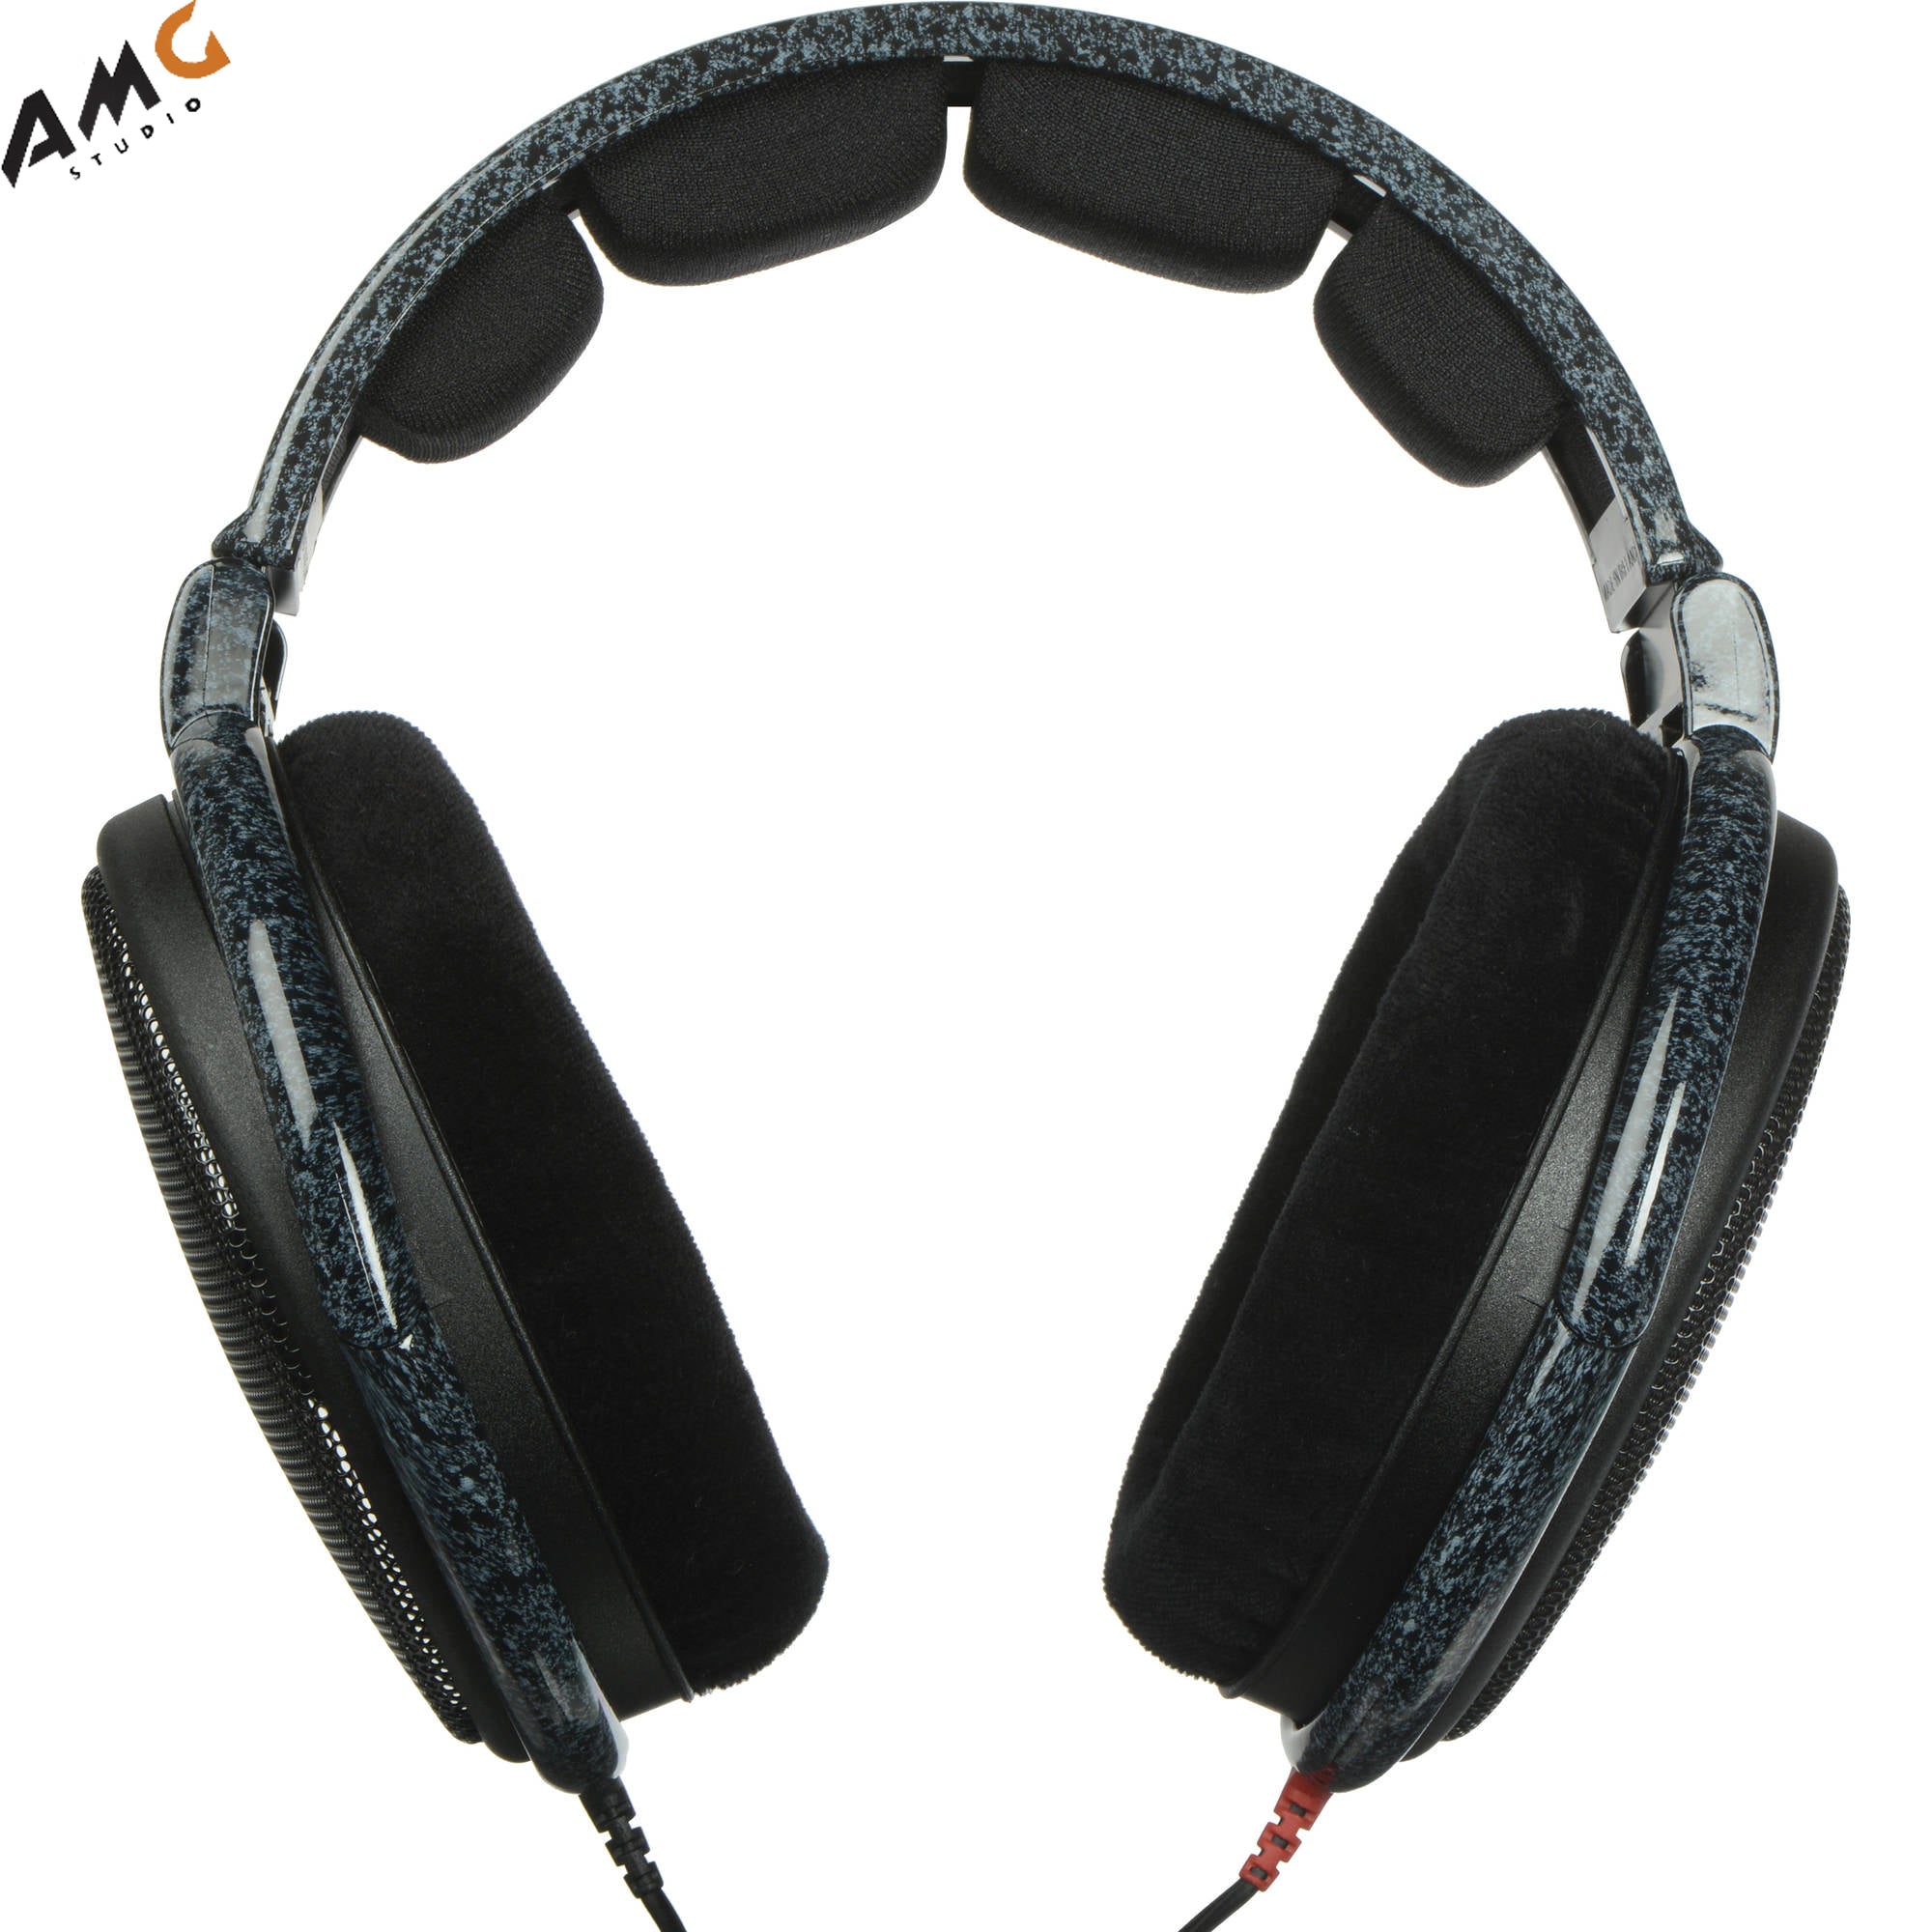 Sennheiser HD 600 Circumaural Headphones